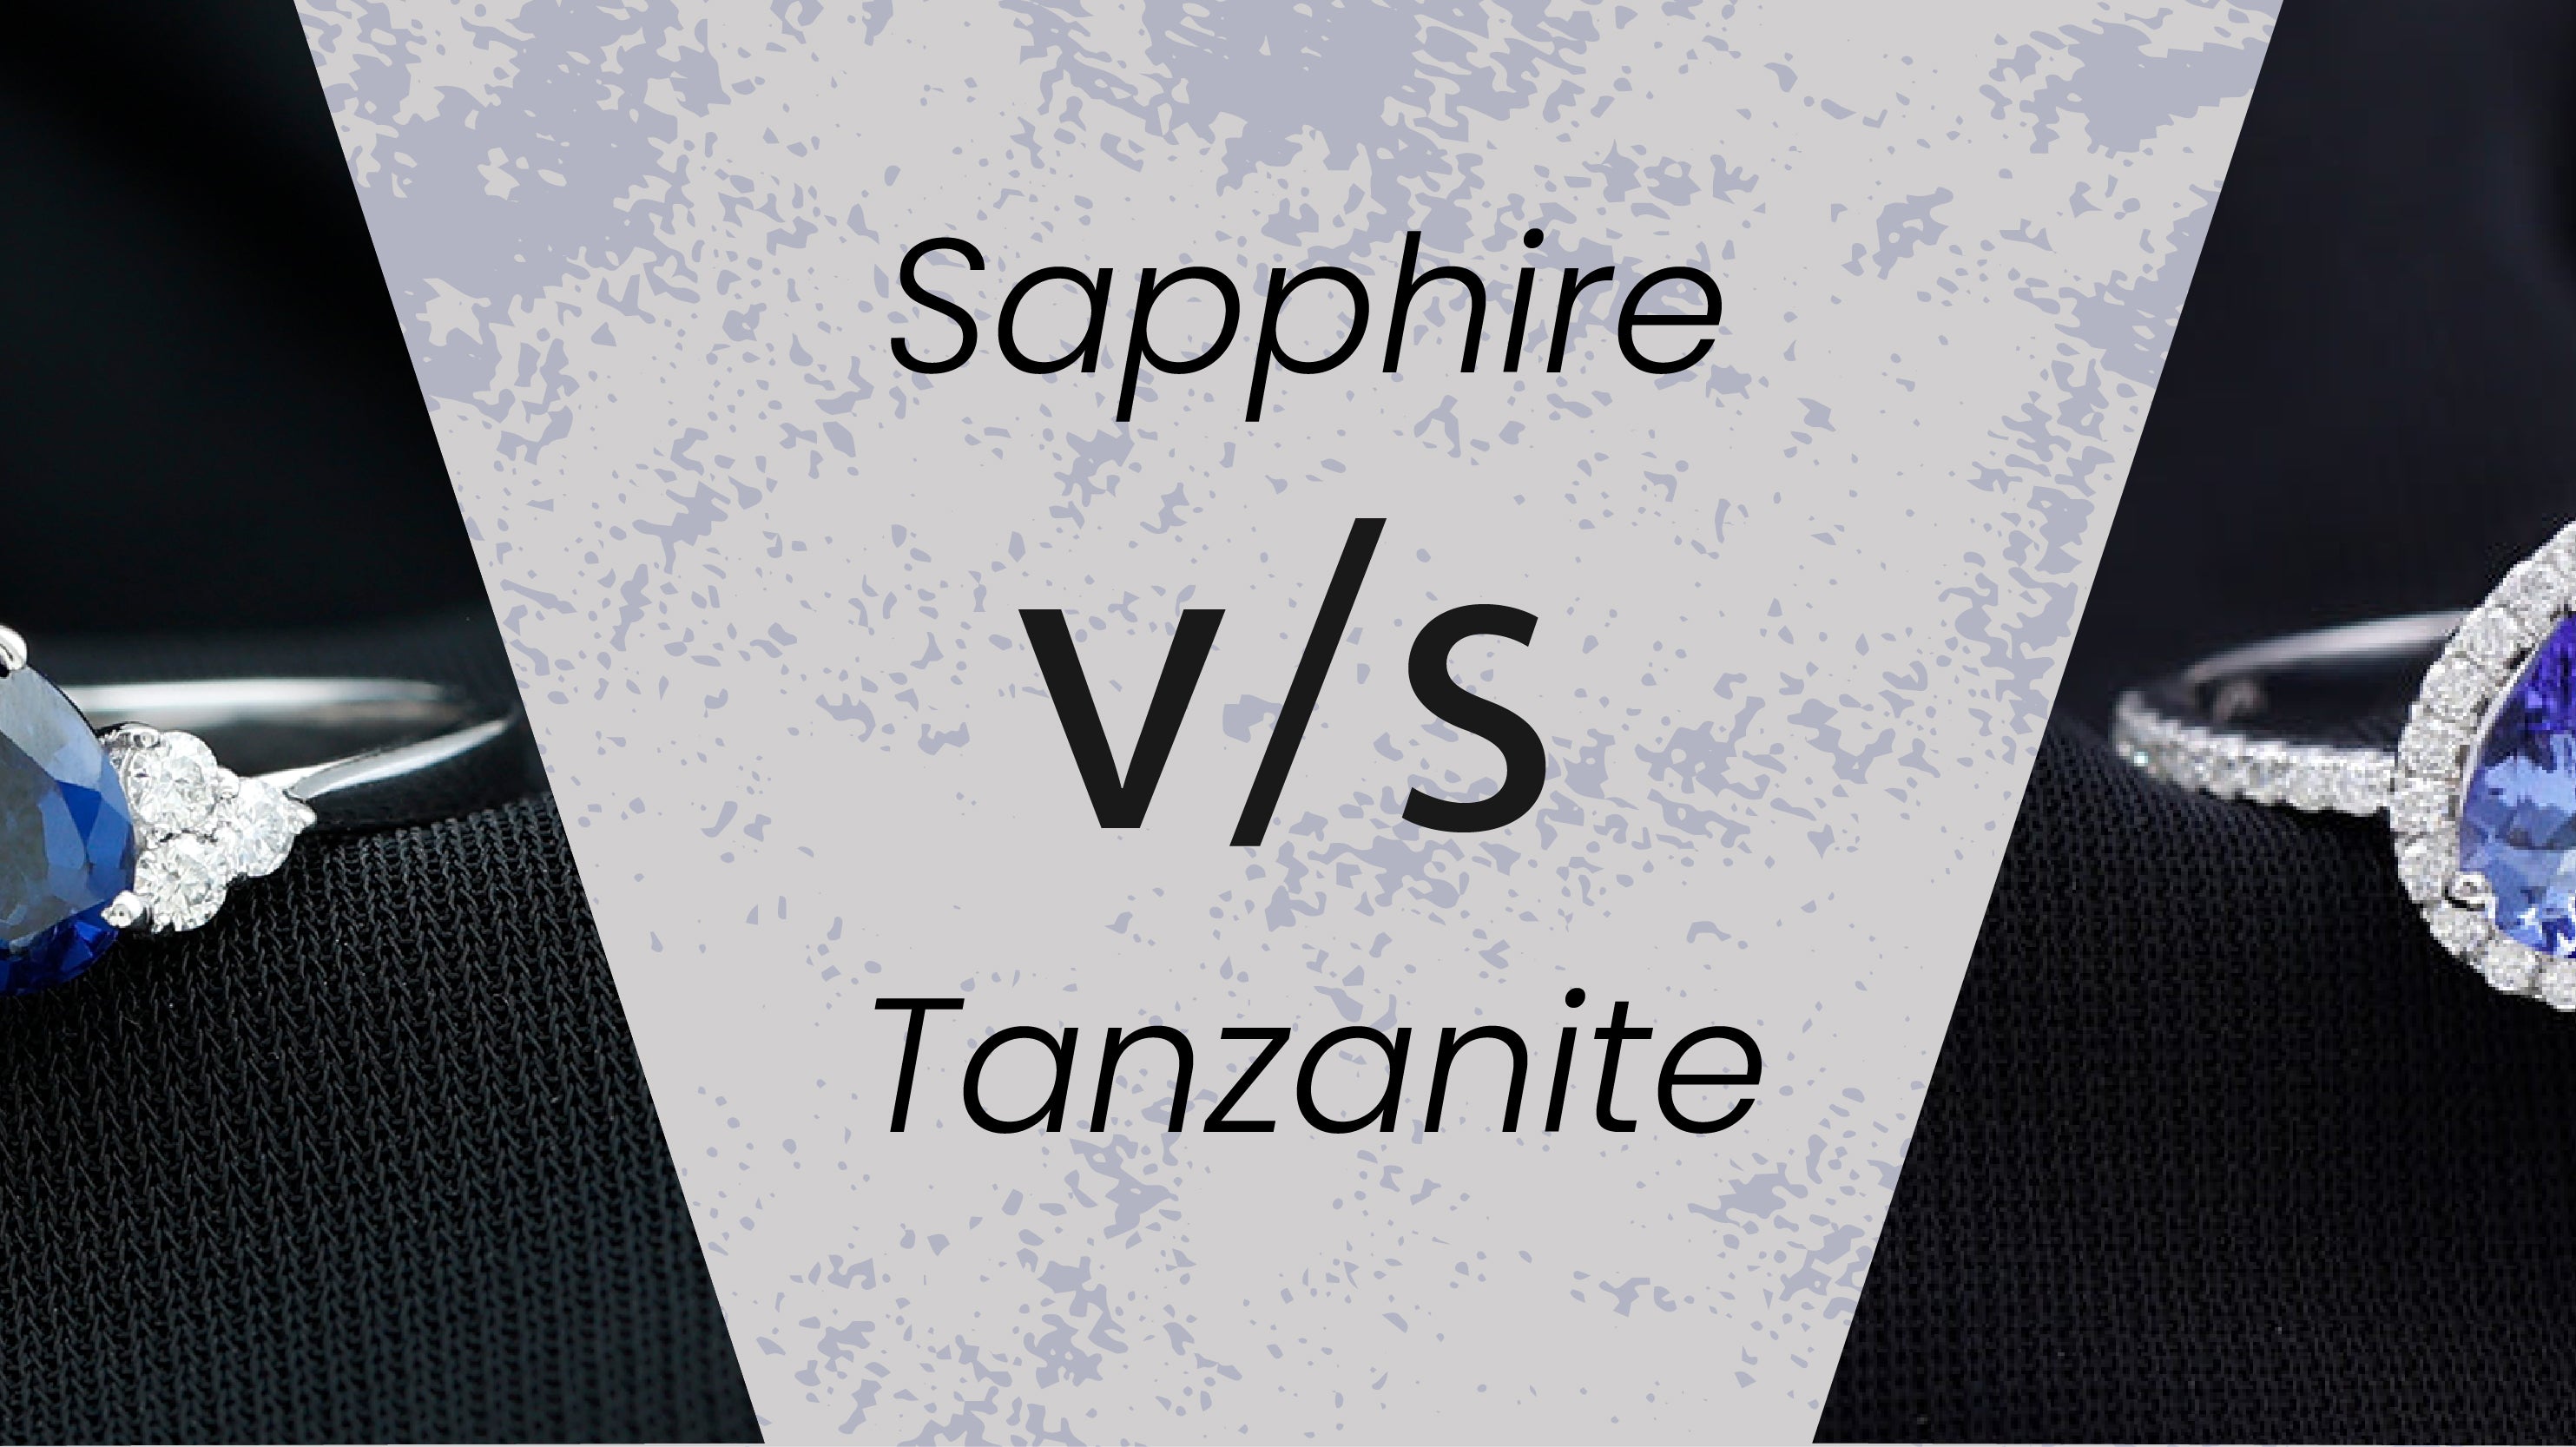 Sapphire vs Tanzanite: Decoding the Difference